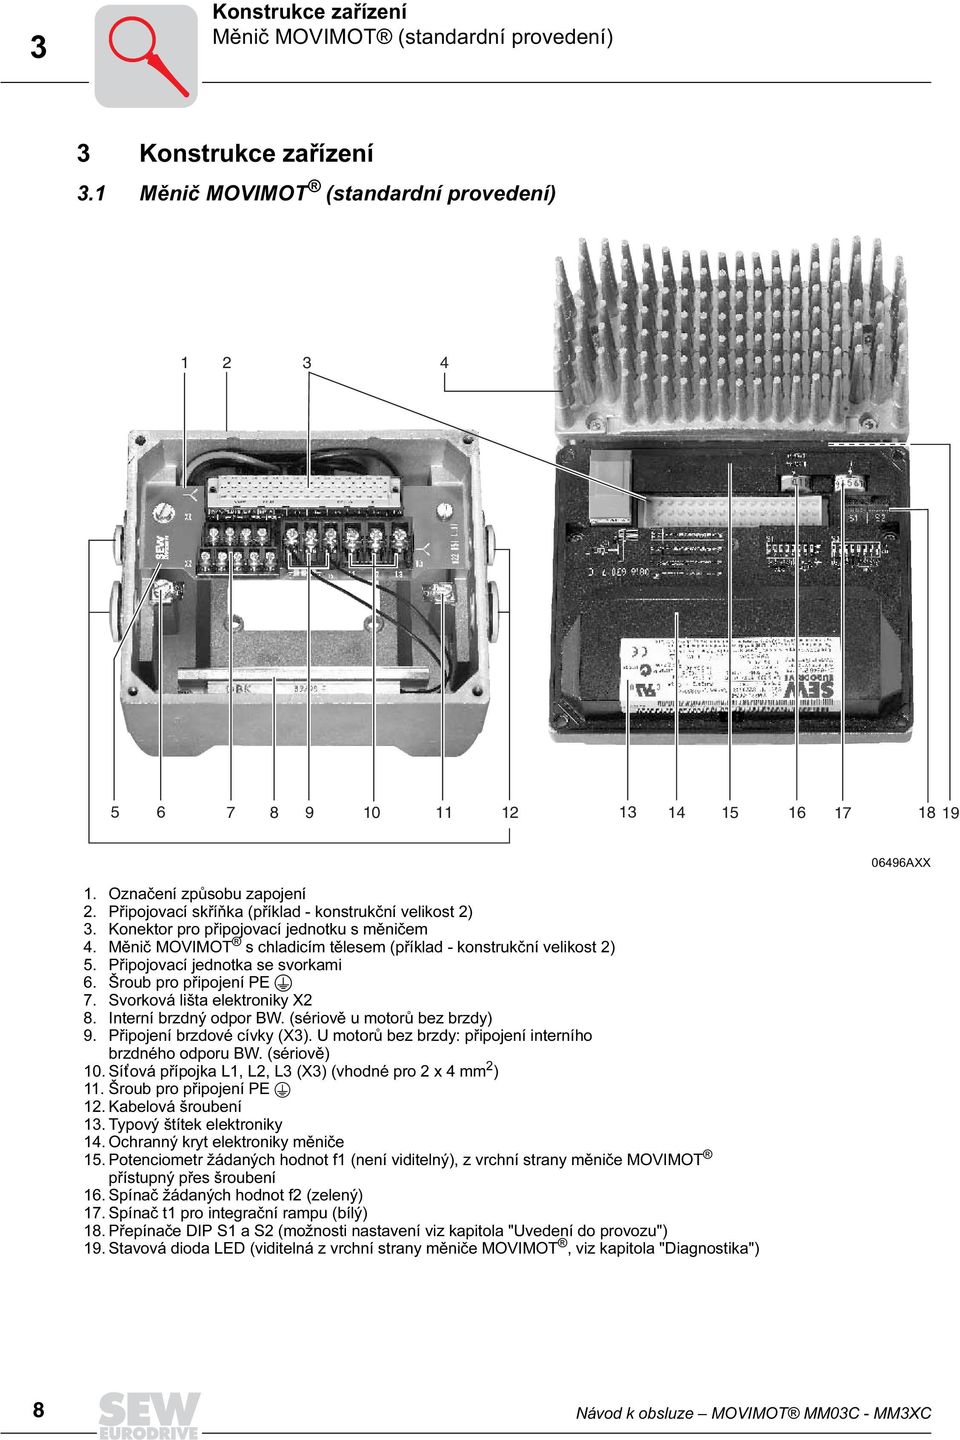 Připojovací jednotka se svorkami 6. Šroub pro připojení PE 7. Svorková lišta elektroniky X2 8. Interní brzdný odpor BW. (sériově u motorů bez brzdy) 9. Připojení brzdové cívky (X3).